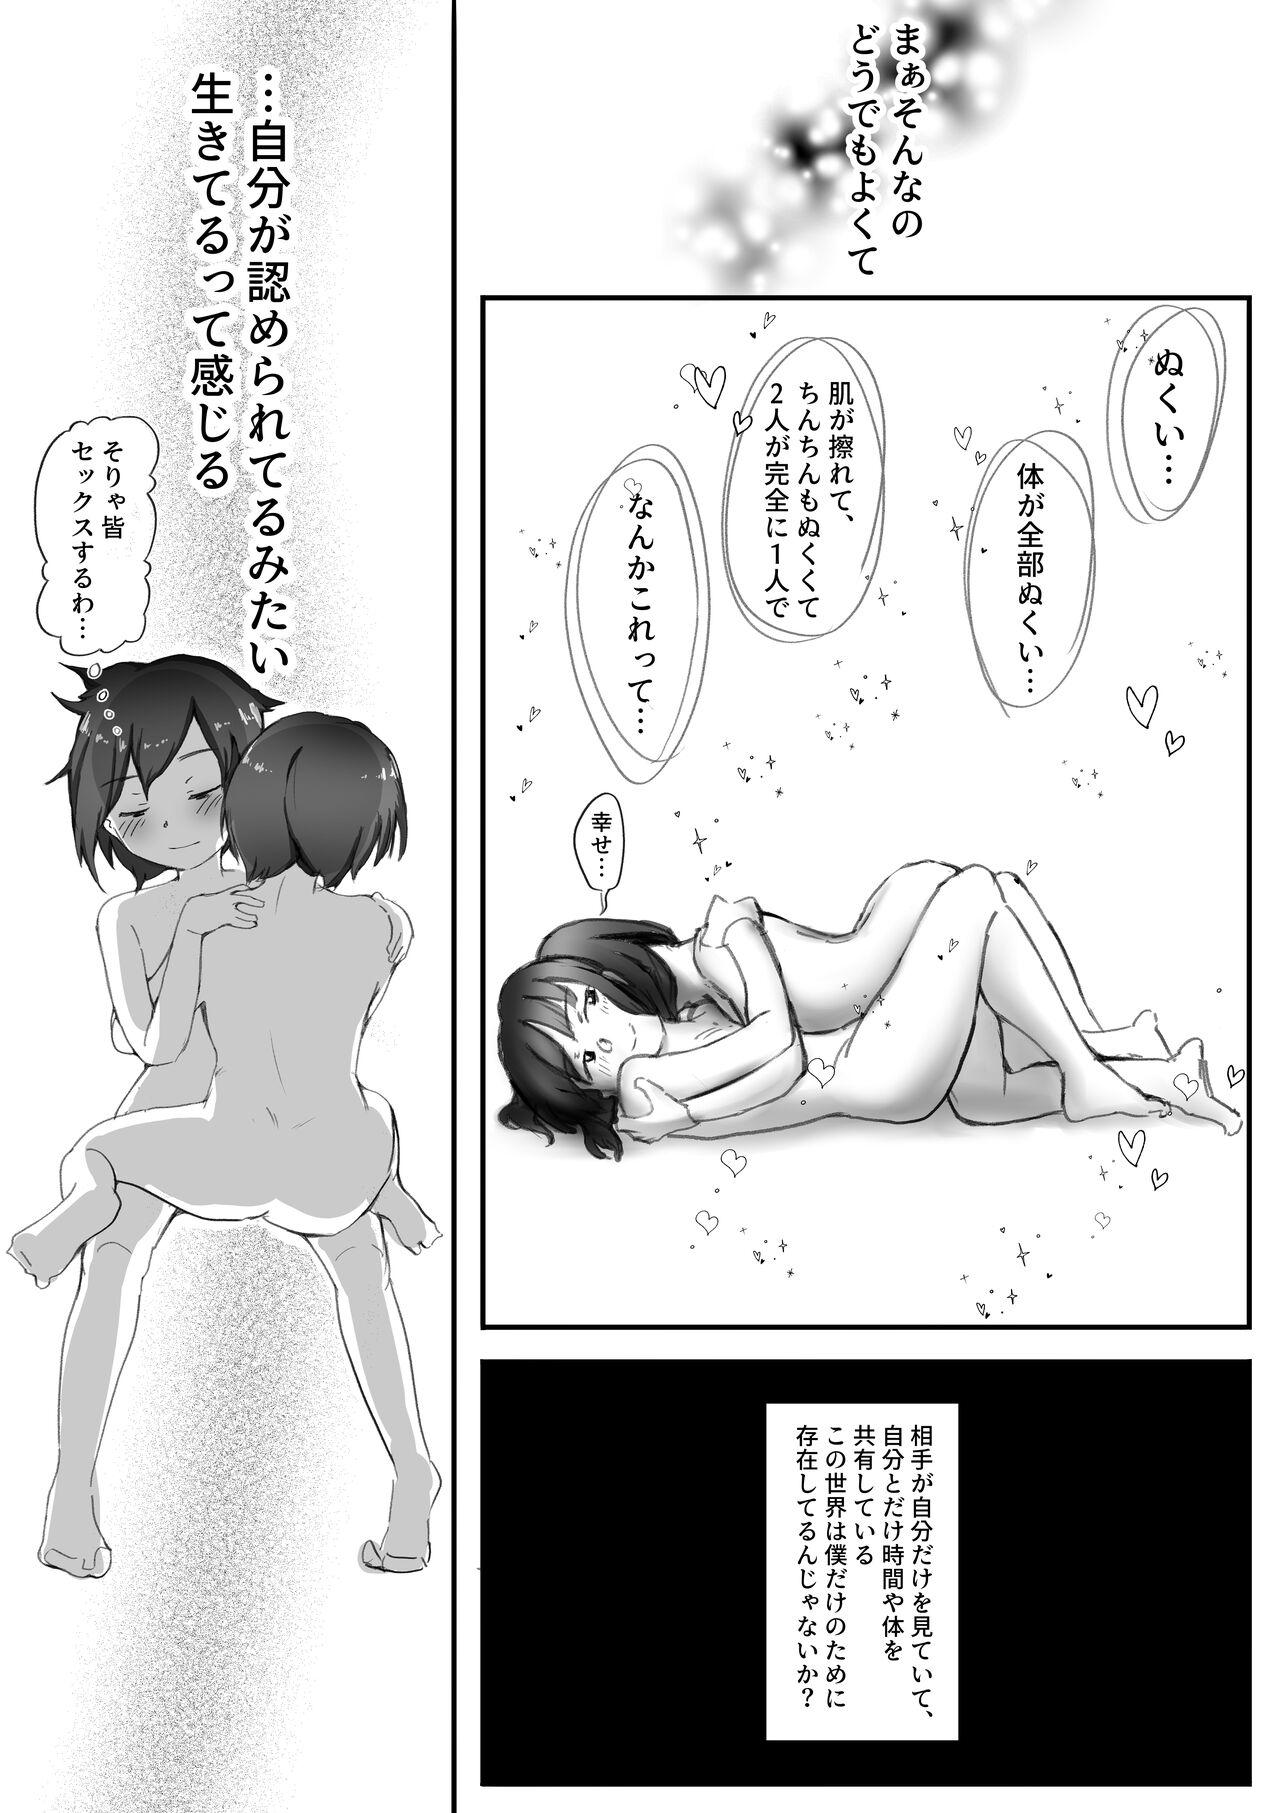 【風俗レポ漫画】飛田新地で童貞を捨てた話 23